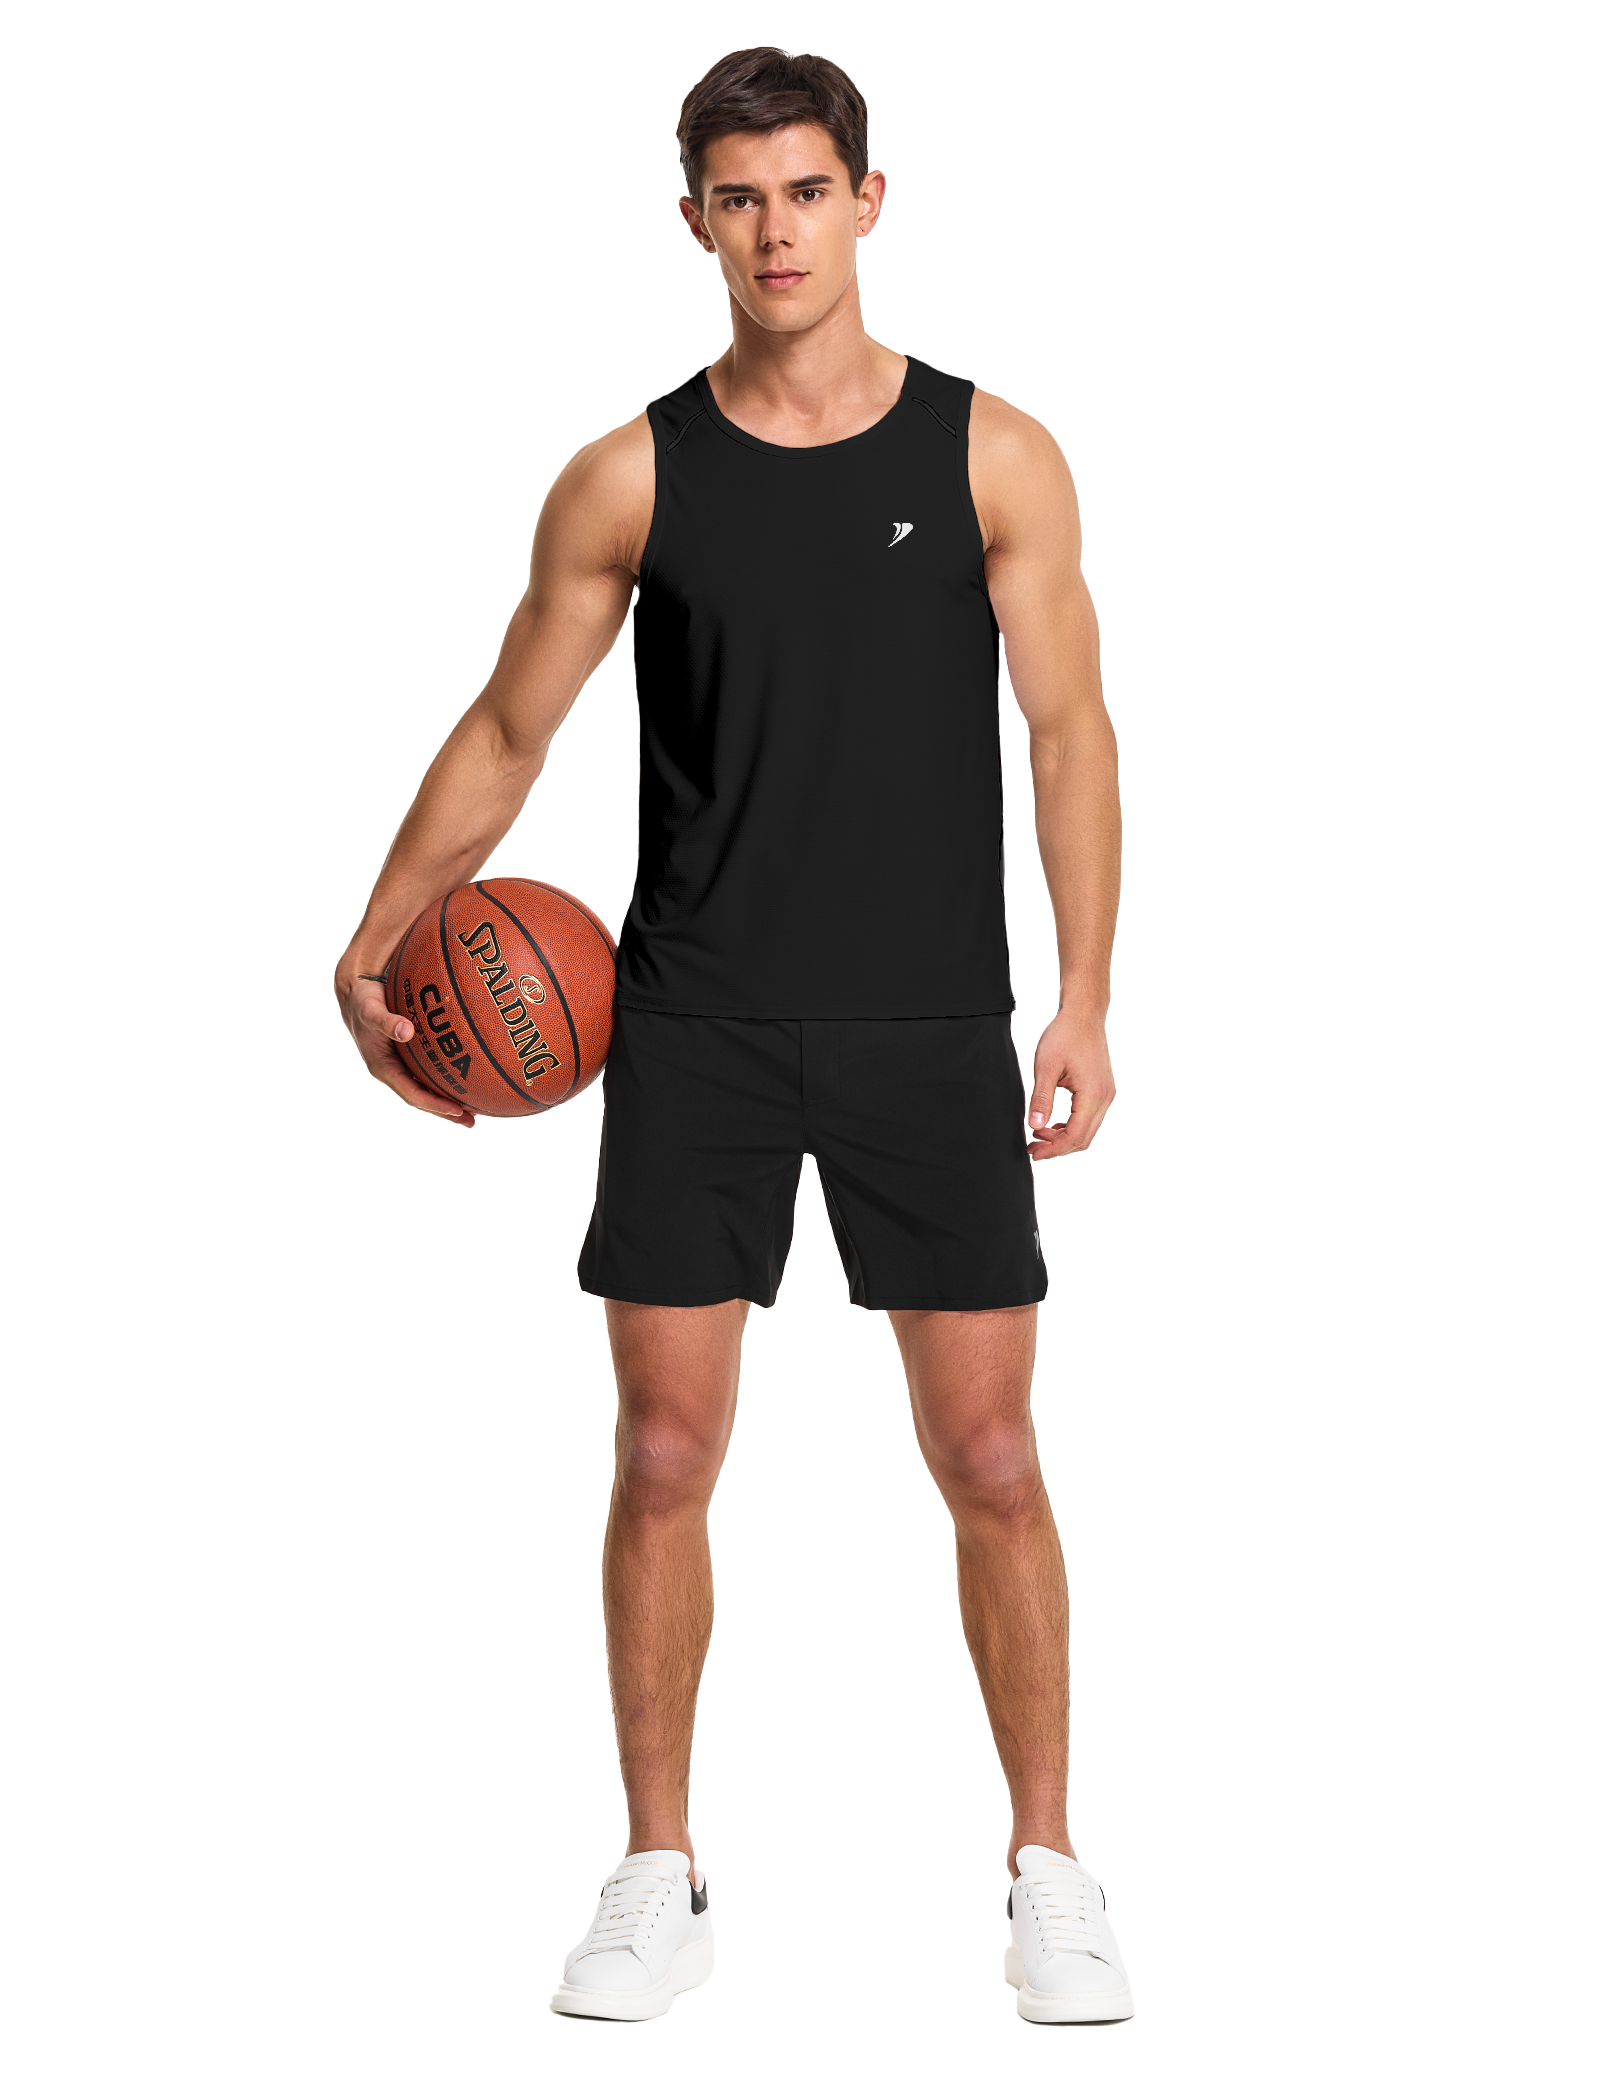 mens running workout gym swim tank top black